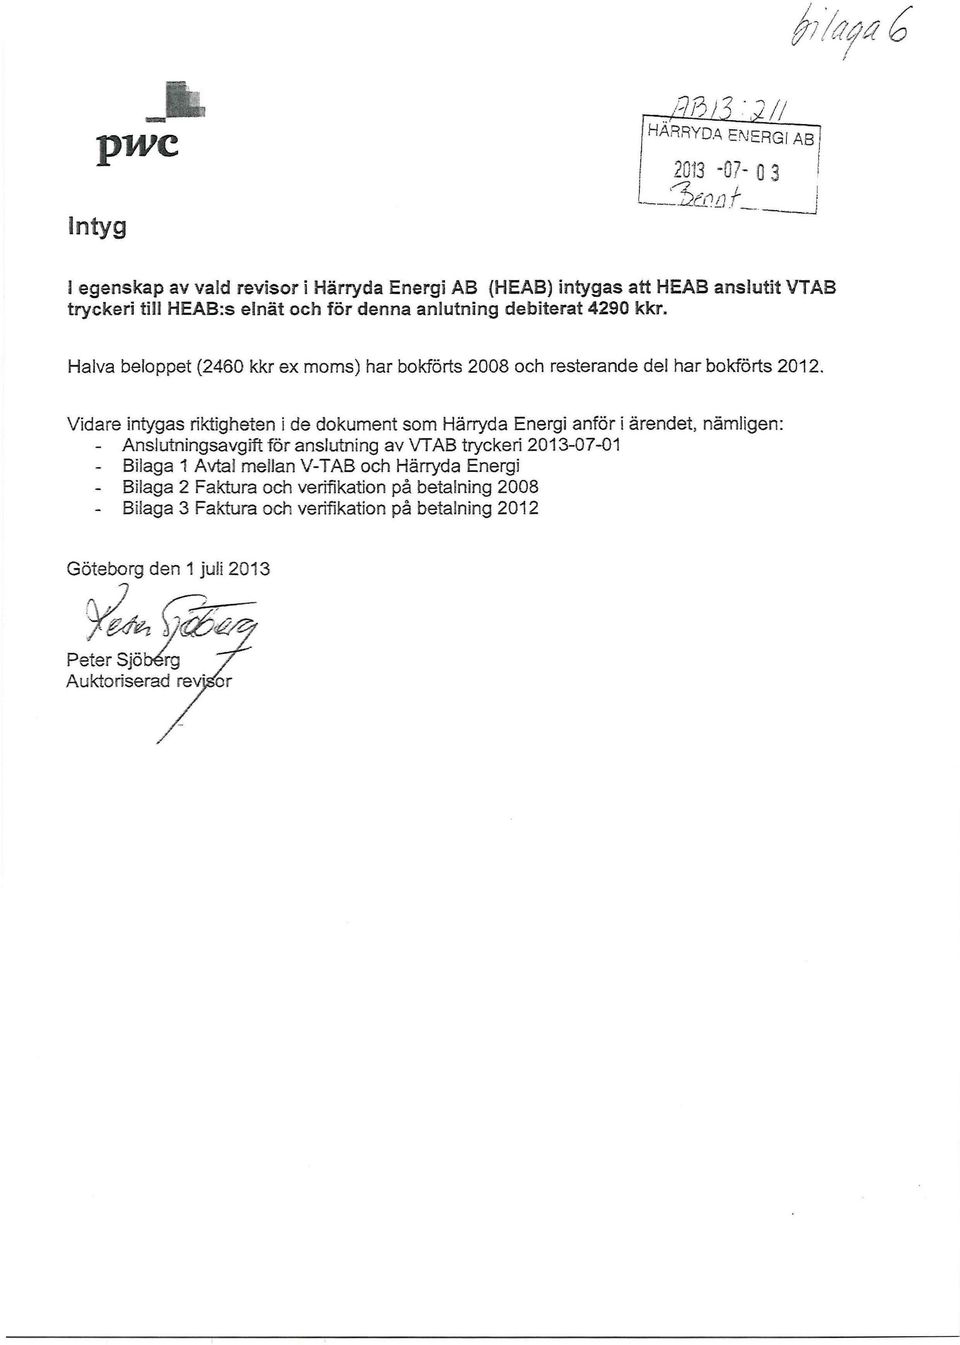 (HEAB) intygas att HEAB anslutit VTAB tryckeri till HEAB:s elnät och för denna anlutning debiterat 4290 kkr. Halva beloppet (2460 kkr ex moms) har bokförts 2008 och resterande del har bokförts 2012.